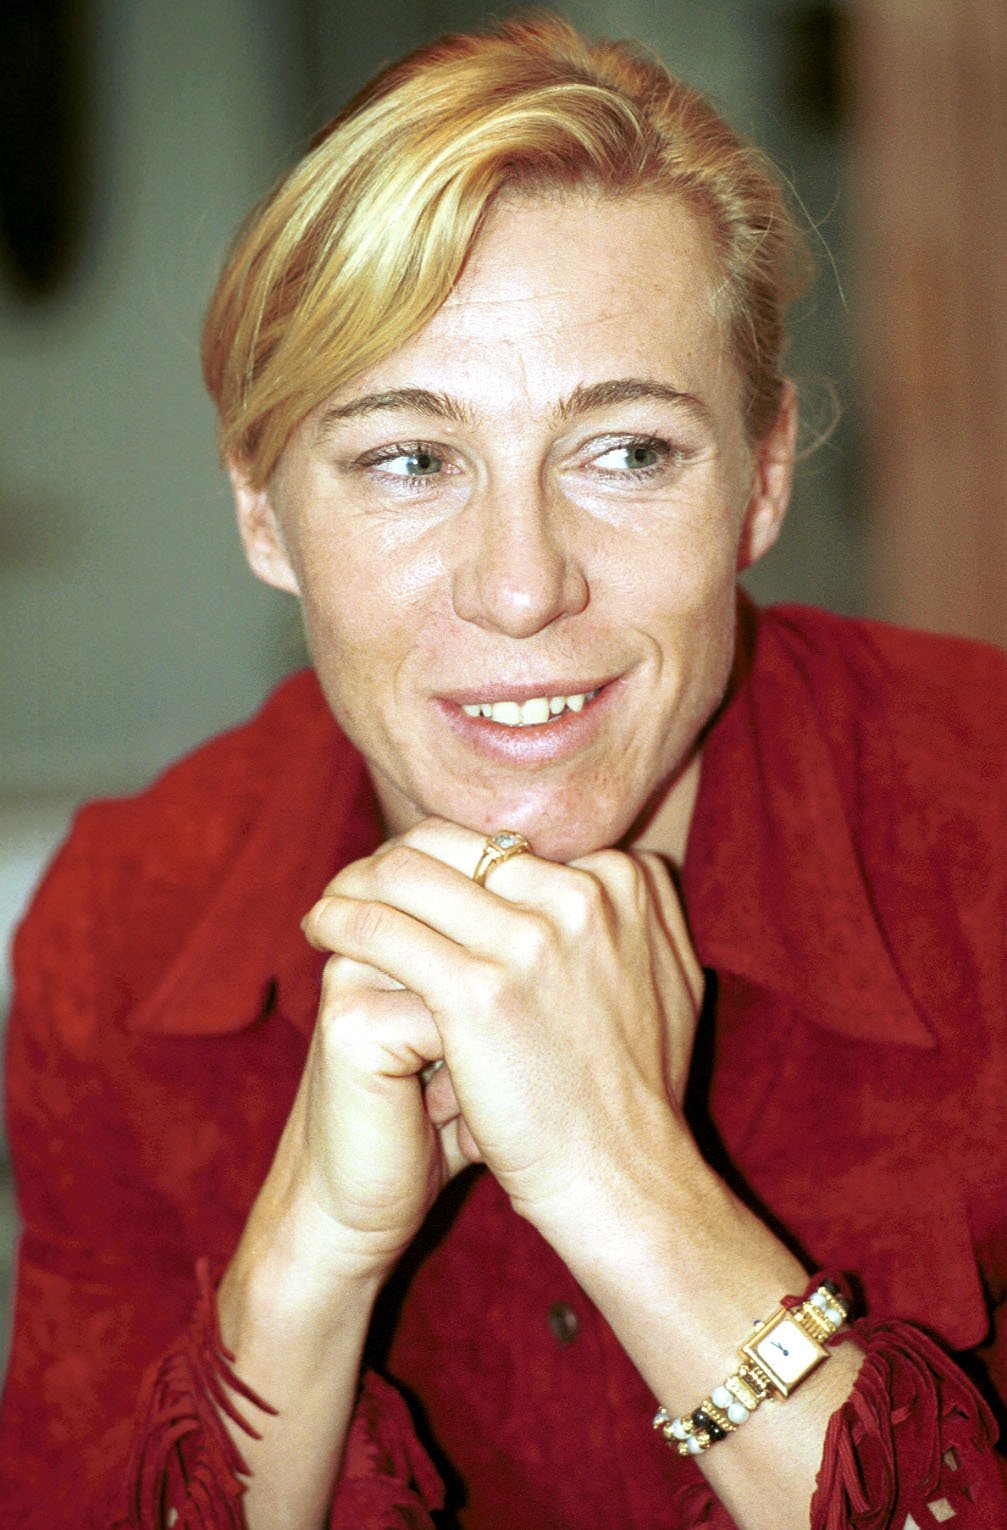 Bývalá úspěšná atletka Helena Fuchsová